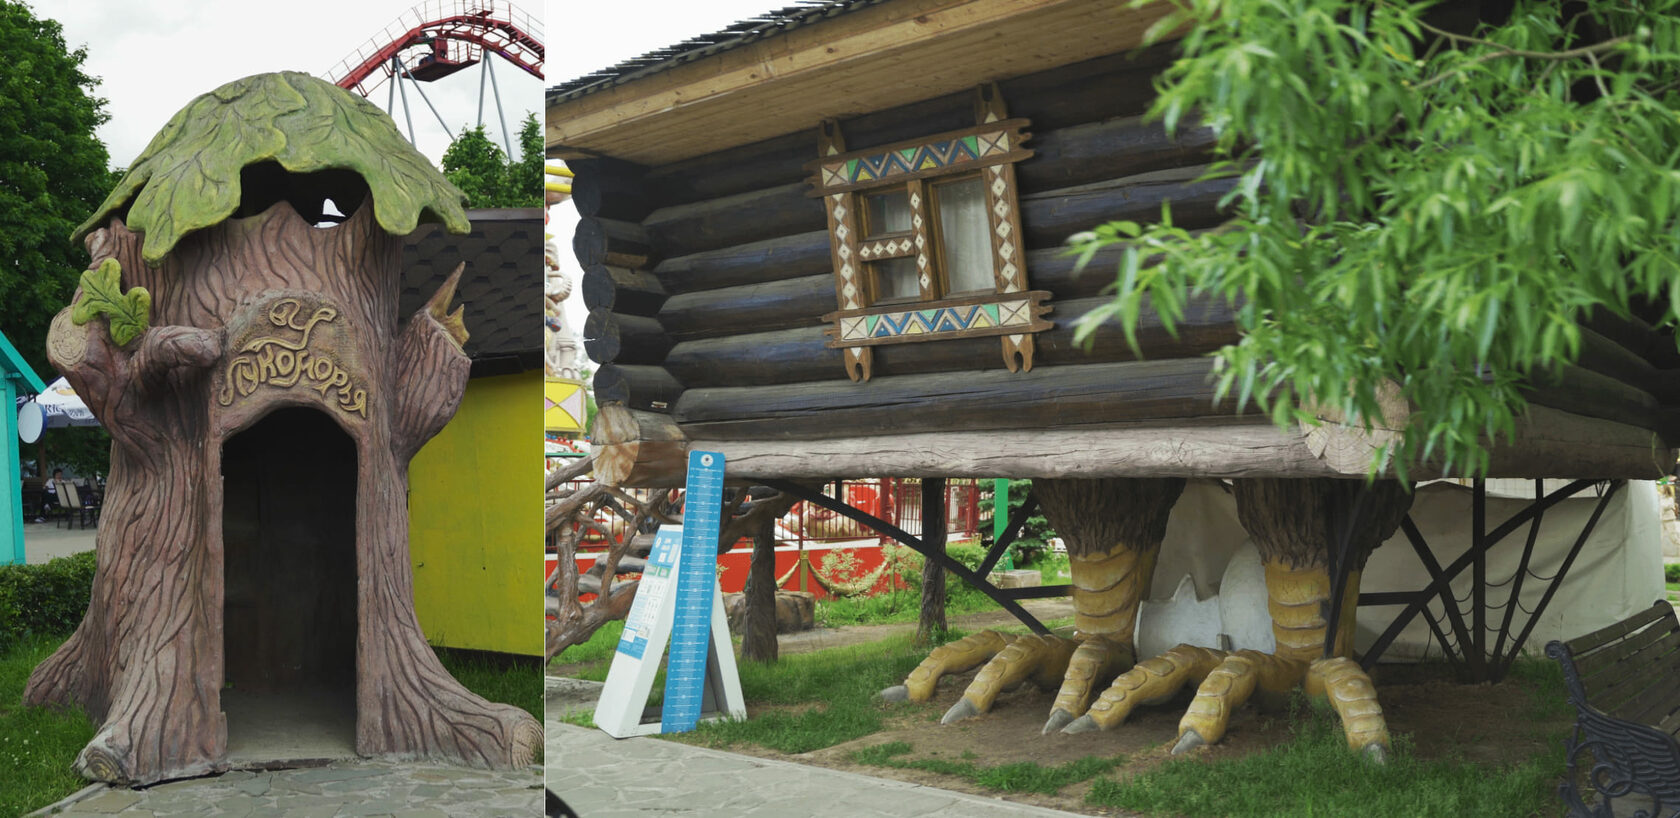 Скульптура дерева и избушка на курьих ножках в парке аттракционов “Skazka”